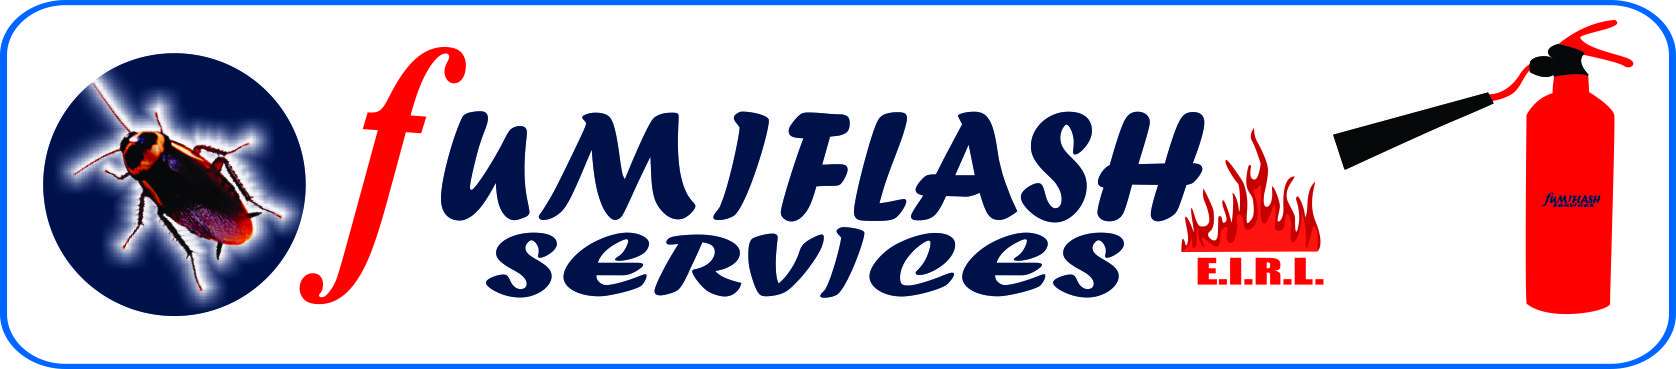 Fumiflash Services E.I.R.L. logo